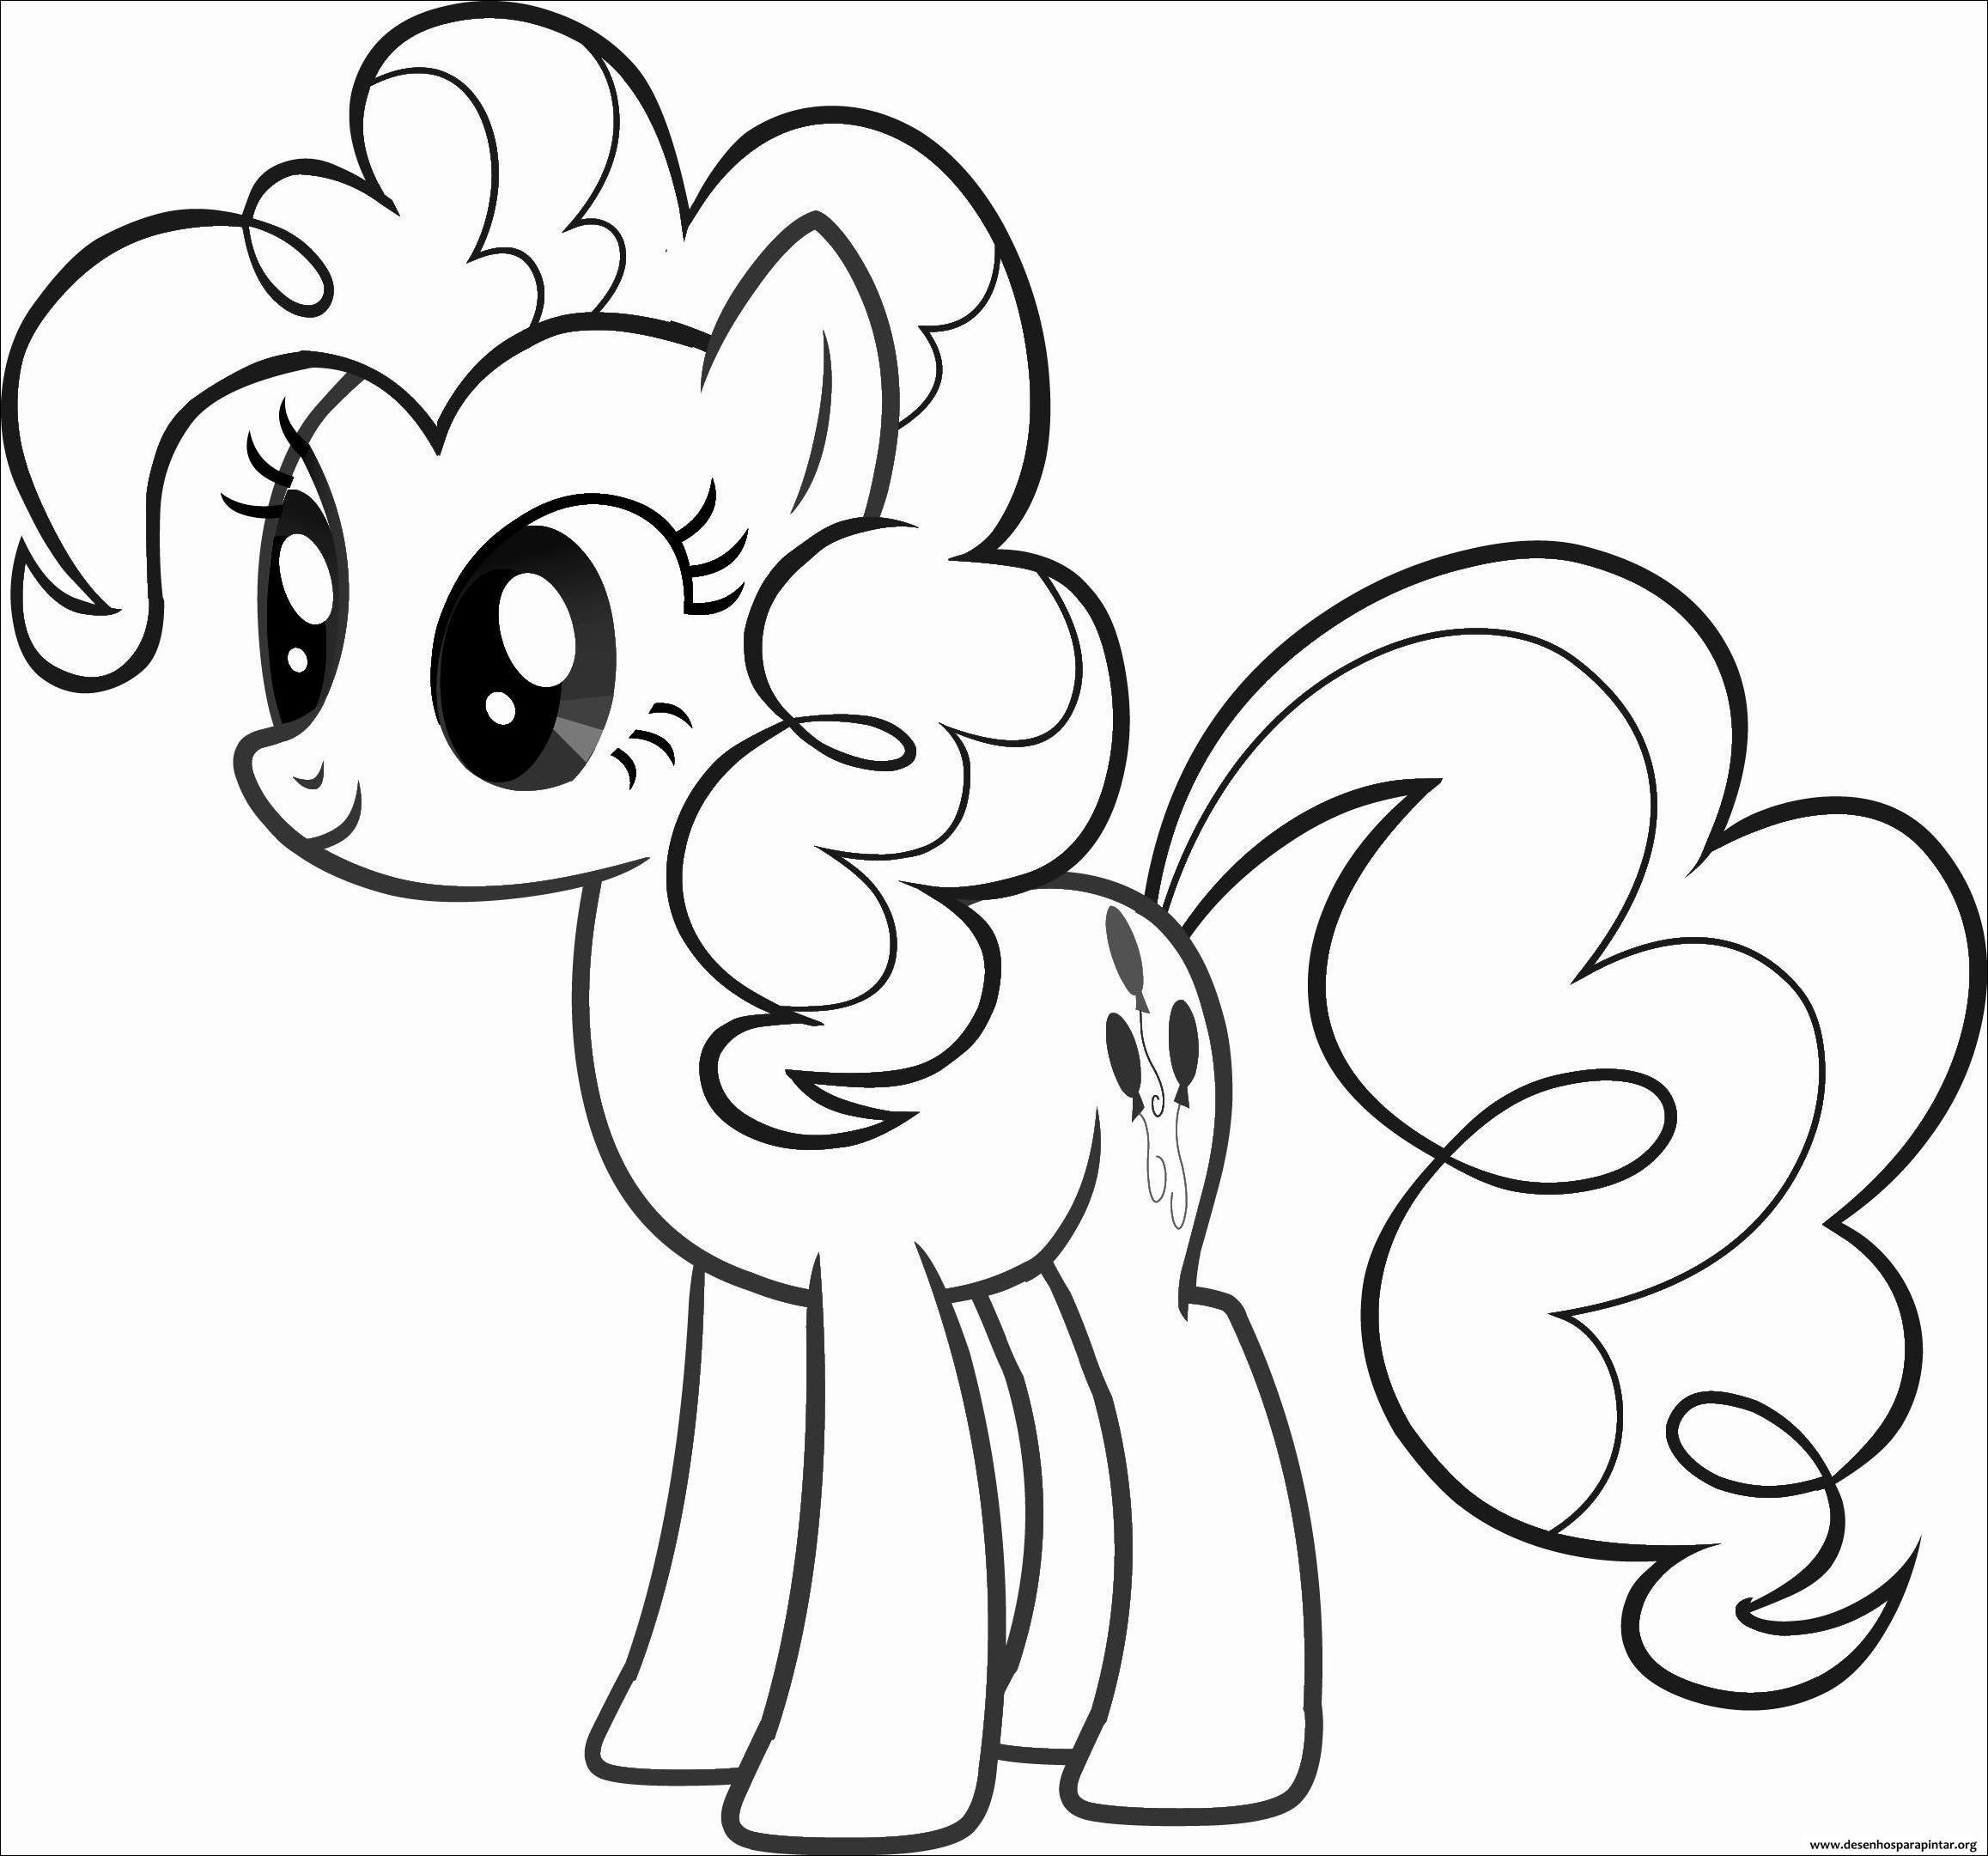 Imagens de desenhos para pintar e imprimir My Little Pony